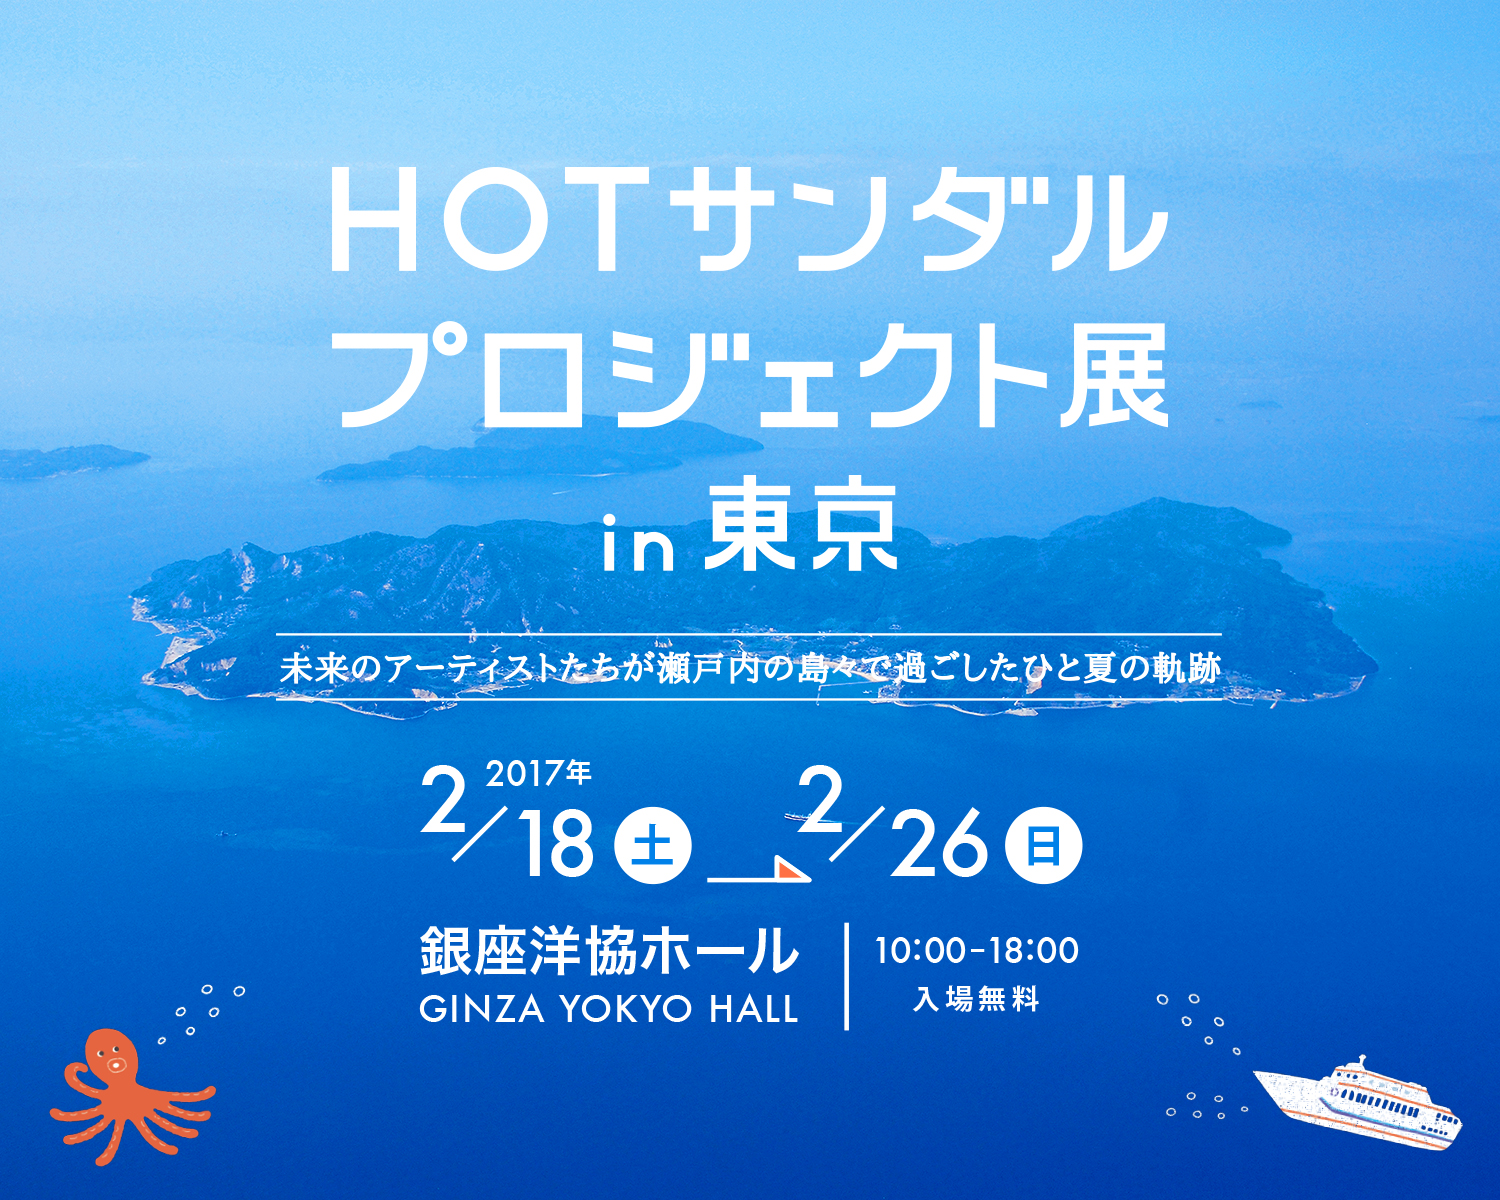 HOTサンダルプロジェクト展 in 東京　銀座洋協ホールにて2017年2月18日(土)から26日(日) まで開催